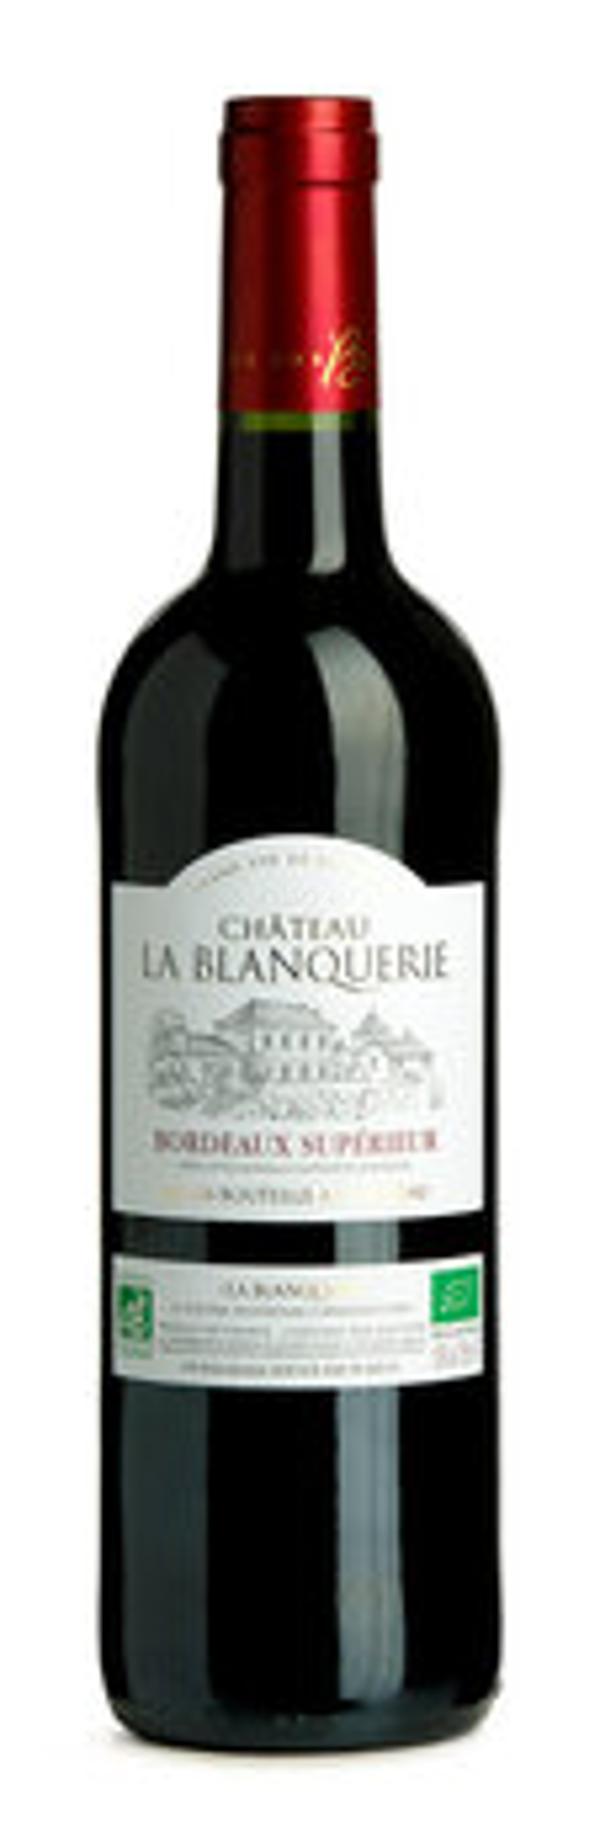 Produktfoto zu Bordeaux Supérieur rot